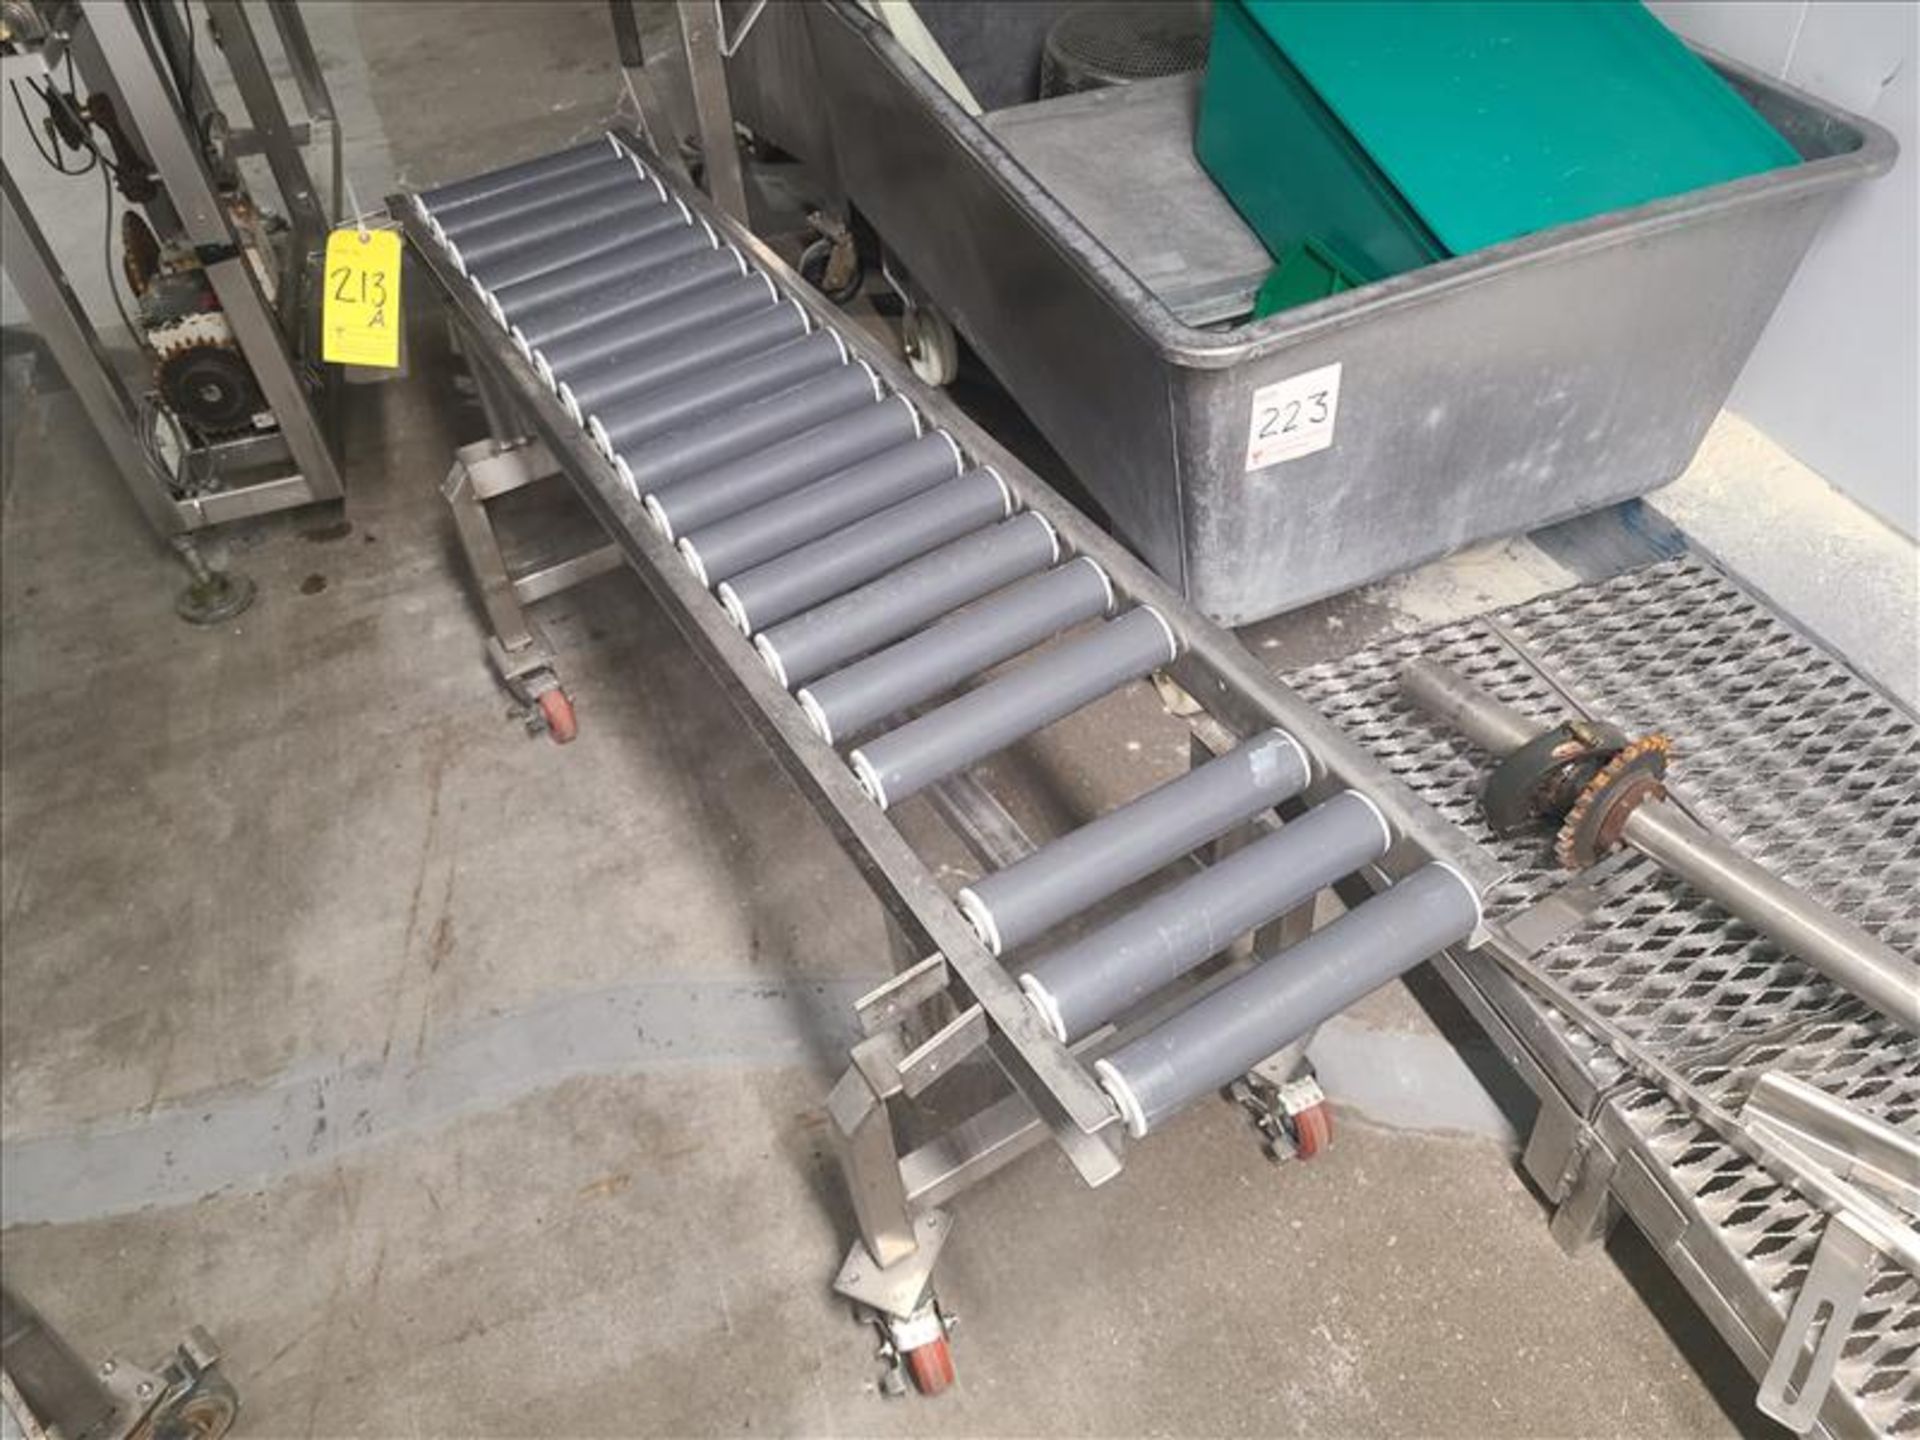 Roller conveyor, 58 in. x 10 in., casters